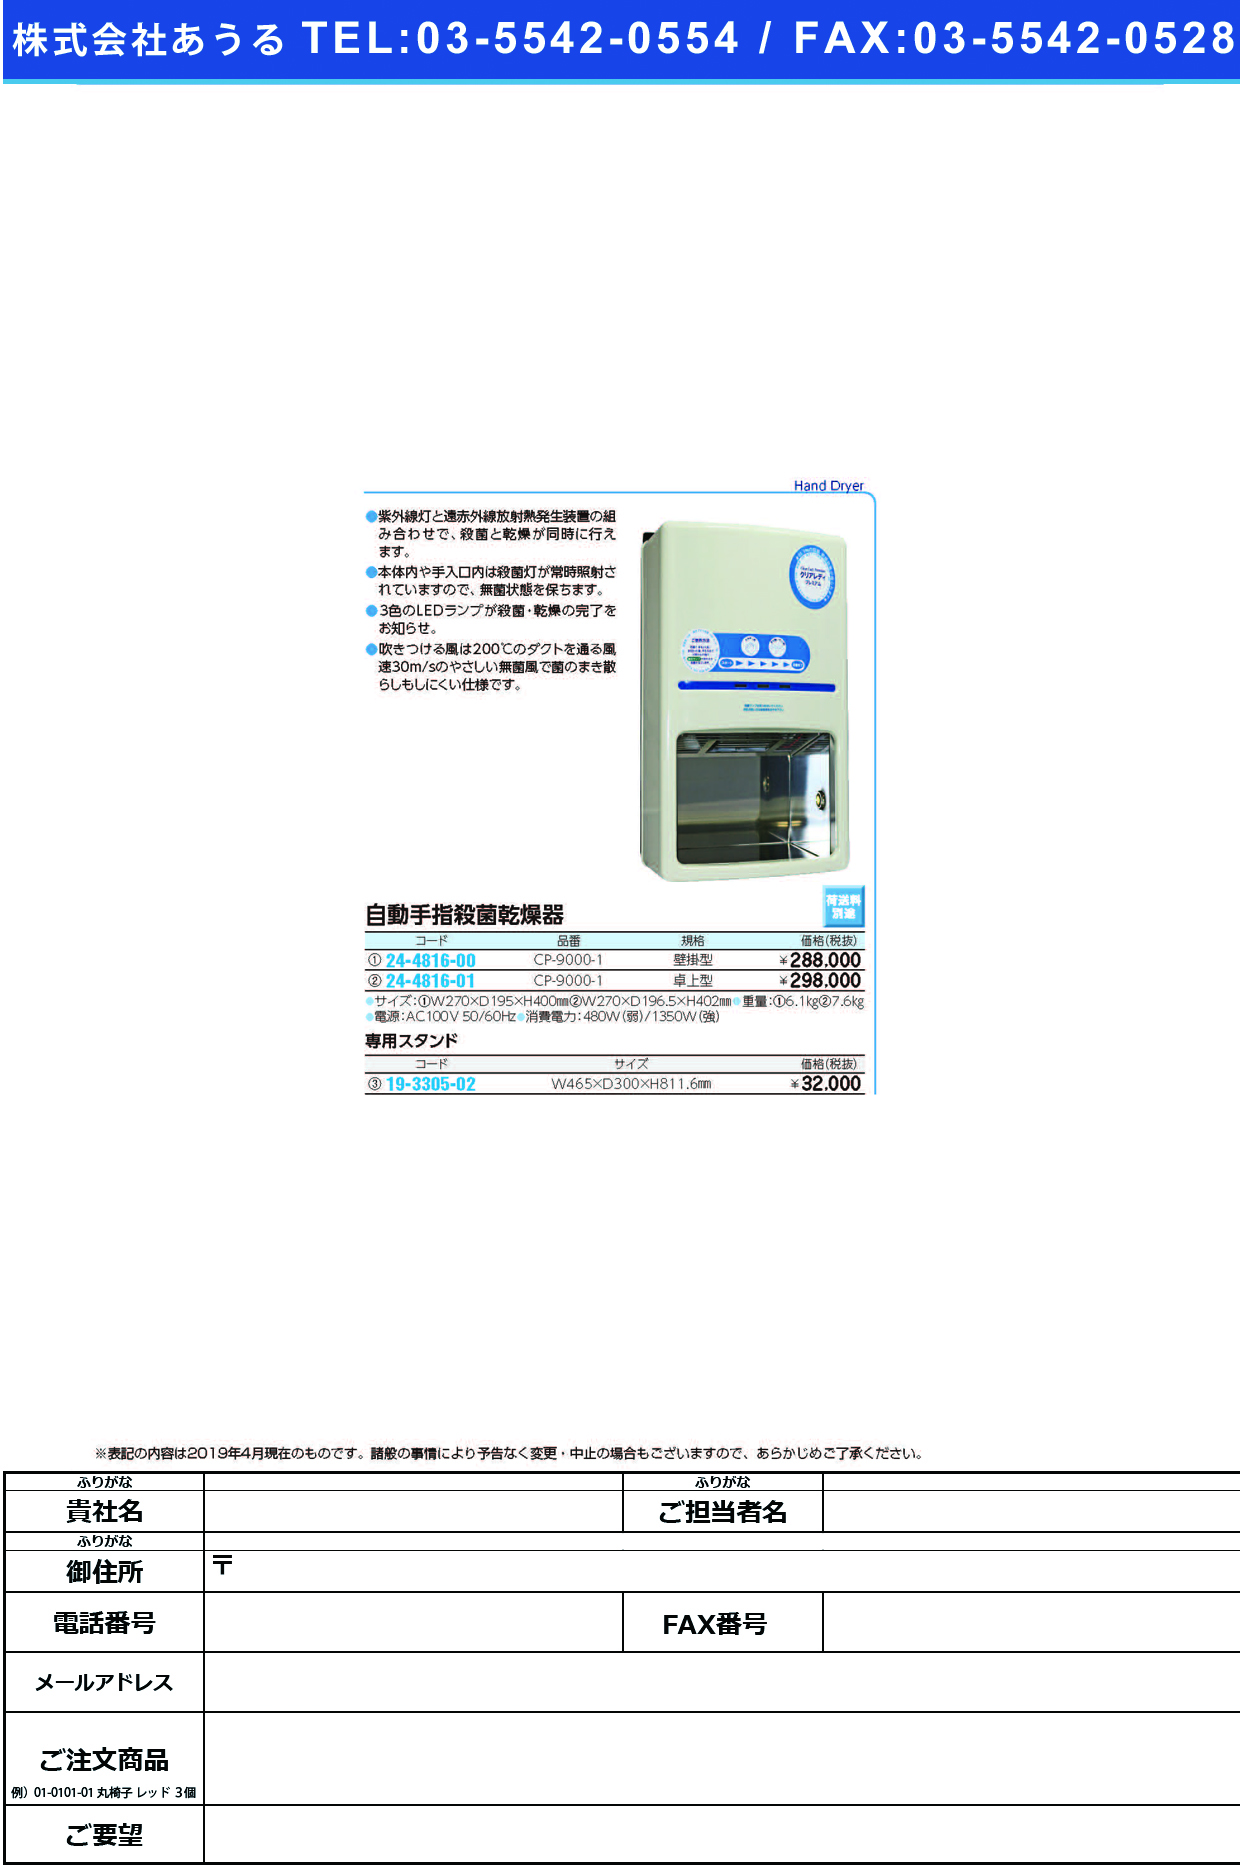 (24-4816-01)自動手指殺菌乾燥器（卓上型） CP-9000-1 ｼｭｼｻｯｷﾝｶﾝｿｳﾀｸｼﾞｮｳｶﾞﾀ【1台単位】【2019年カタログ商品】